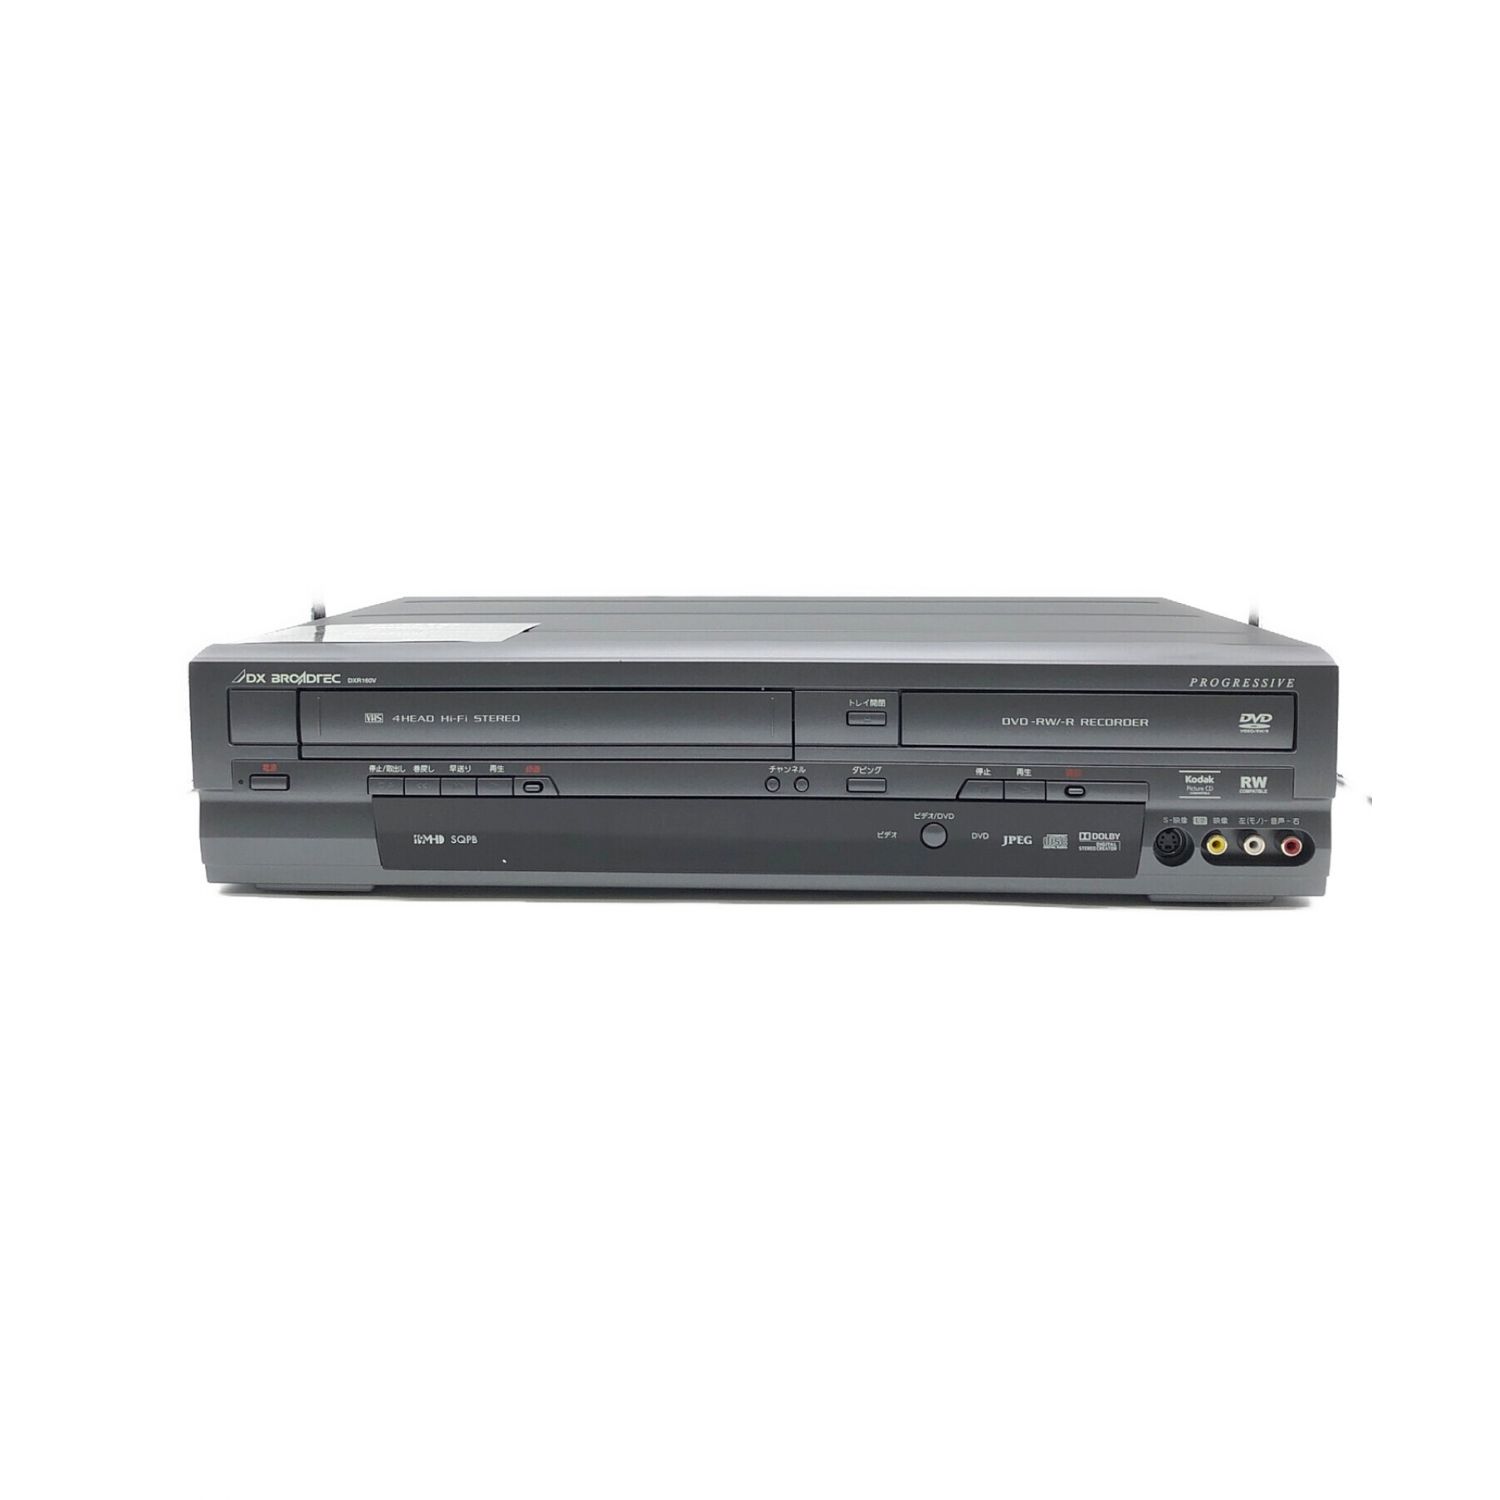 あなたにおすすめの商品 FUNAI 地デジチューナー内蔵ビデオ一体型DVDレコーダー DXR160V DVDレコーダー - www